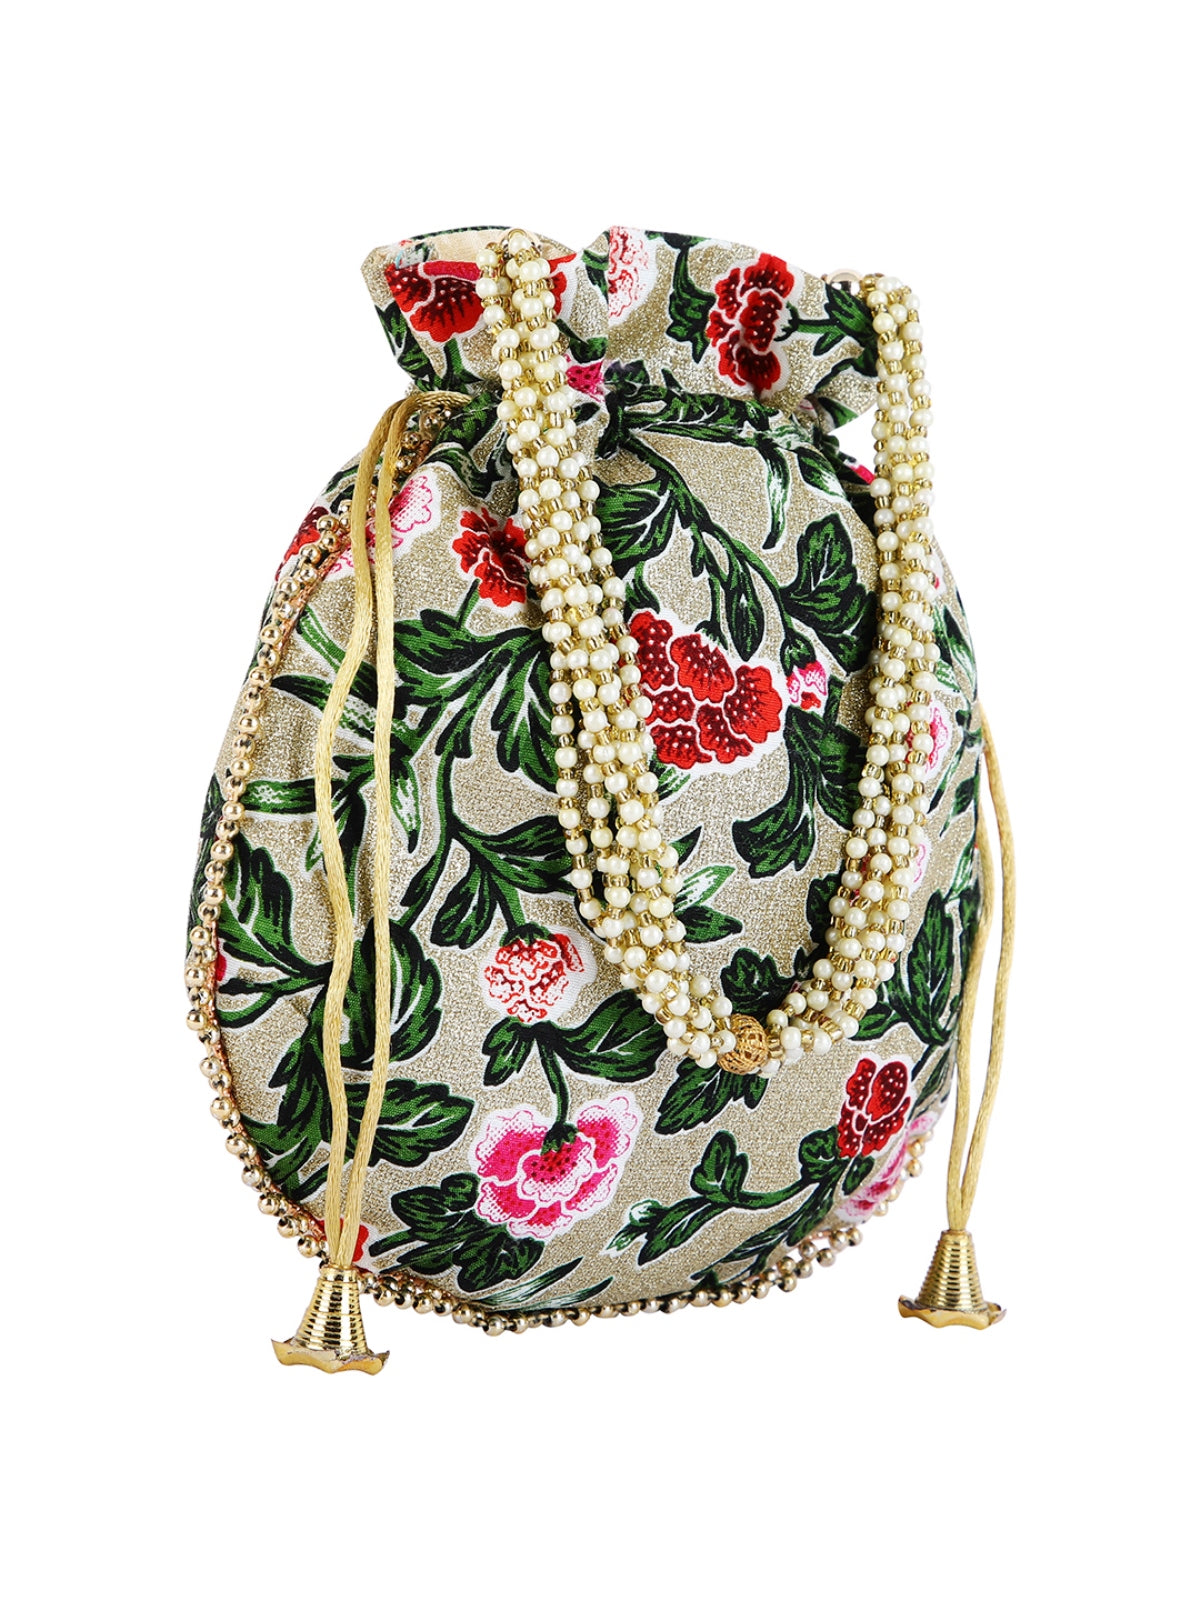 Green & Gold Floral Embellished Silk Designer Potli Bag / Hand Bag